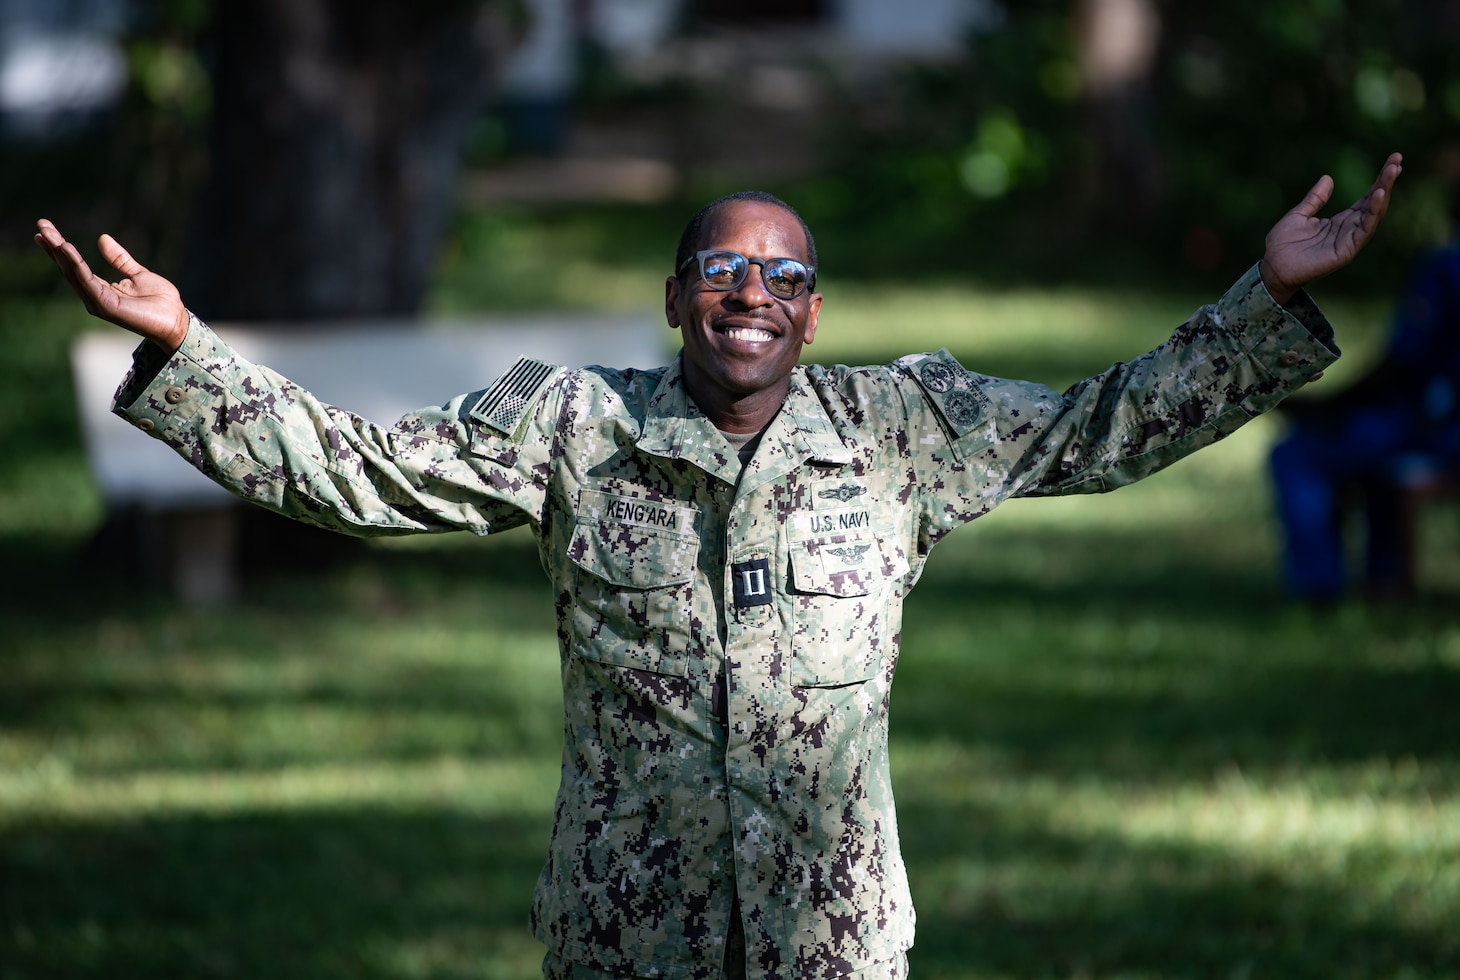 U.S. Navy Lt. Paul Kengara poses for a photo.